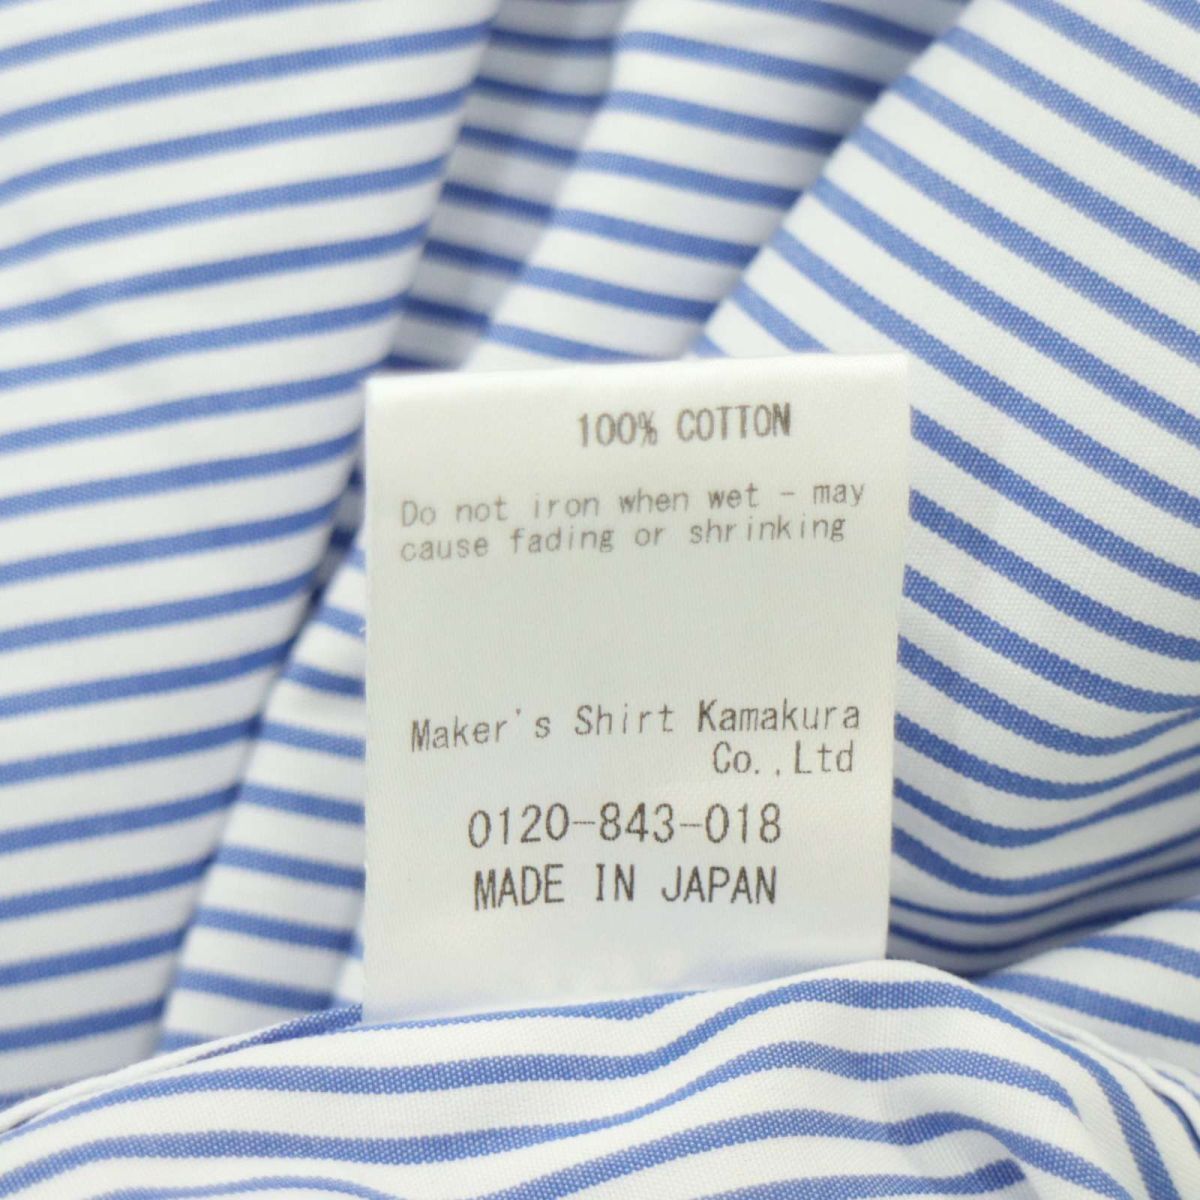 Maker's Shirt メーカーズシャツ 鎌倉 長袖 ホリゾンタルカラー★ ストライプ シャツ Sz.43/85 メンズ 紺 白 日本製 大きい A4T02632_3#Cの画像9